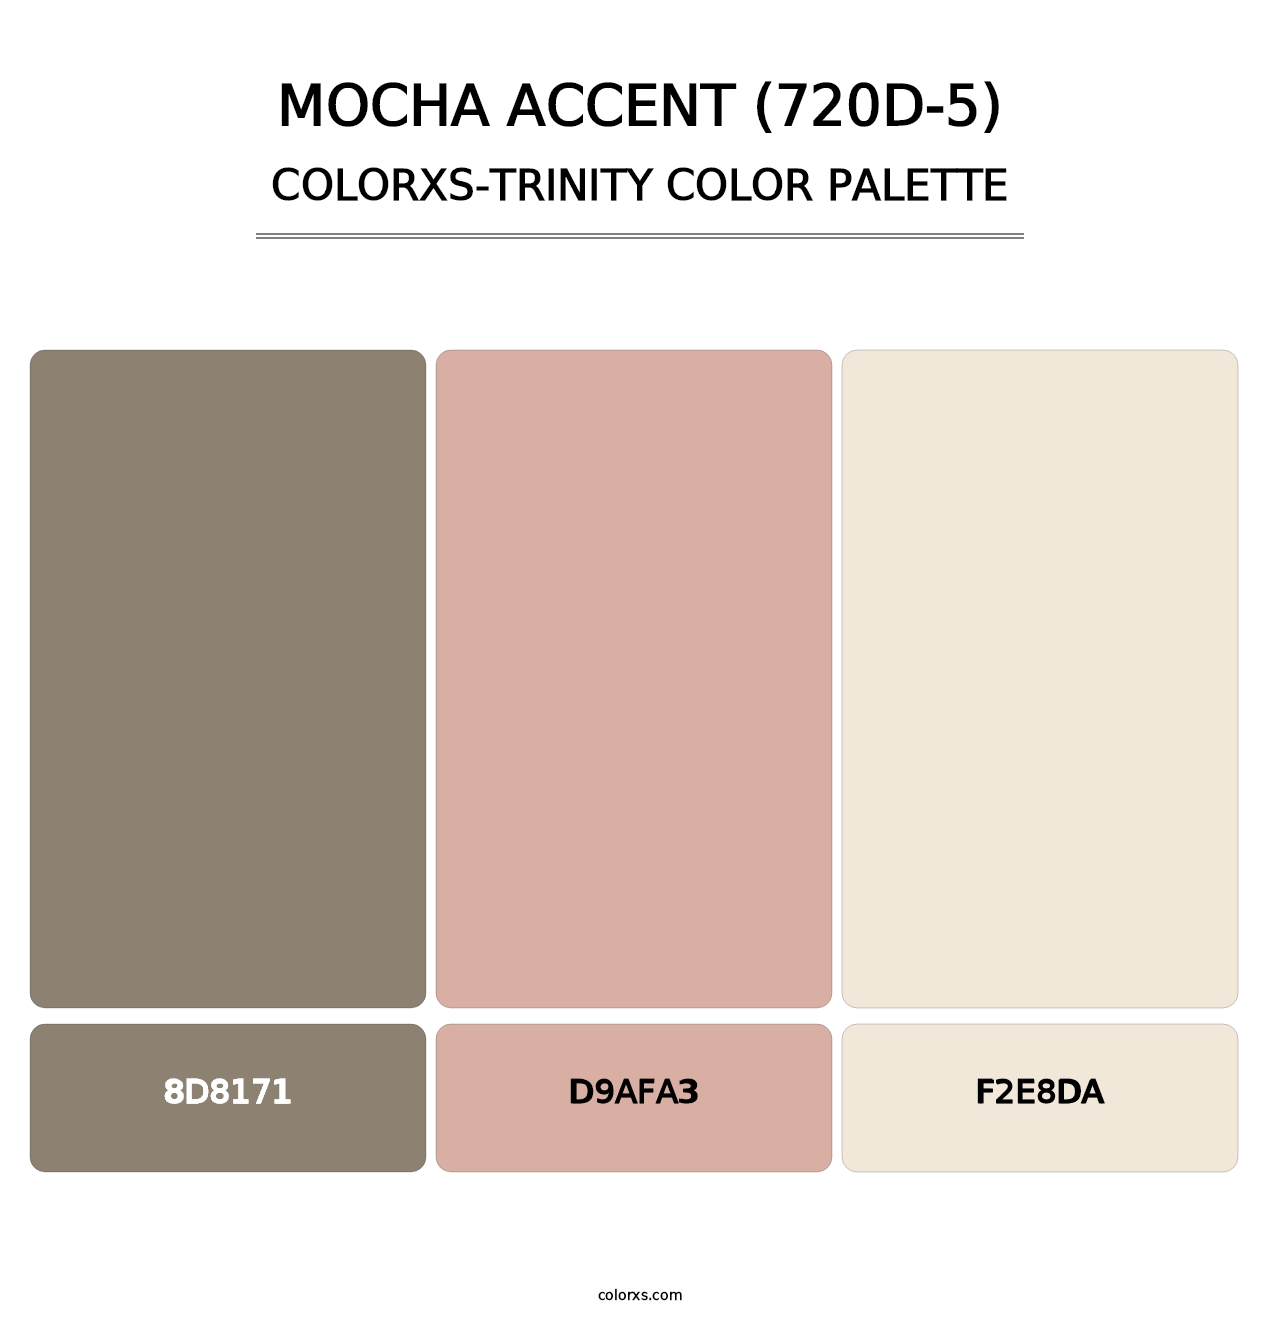 Mocha Accent (720D-5) - Colorxs Trinity Palette